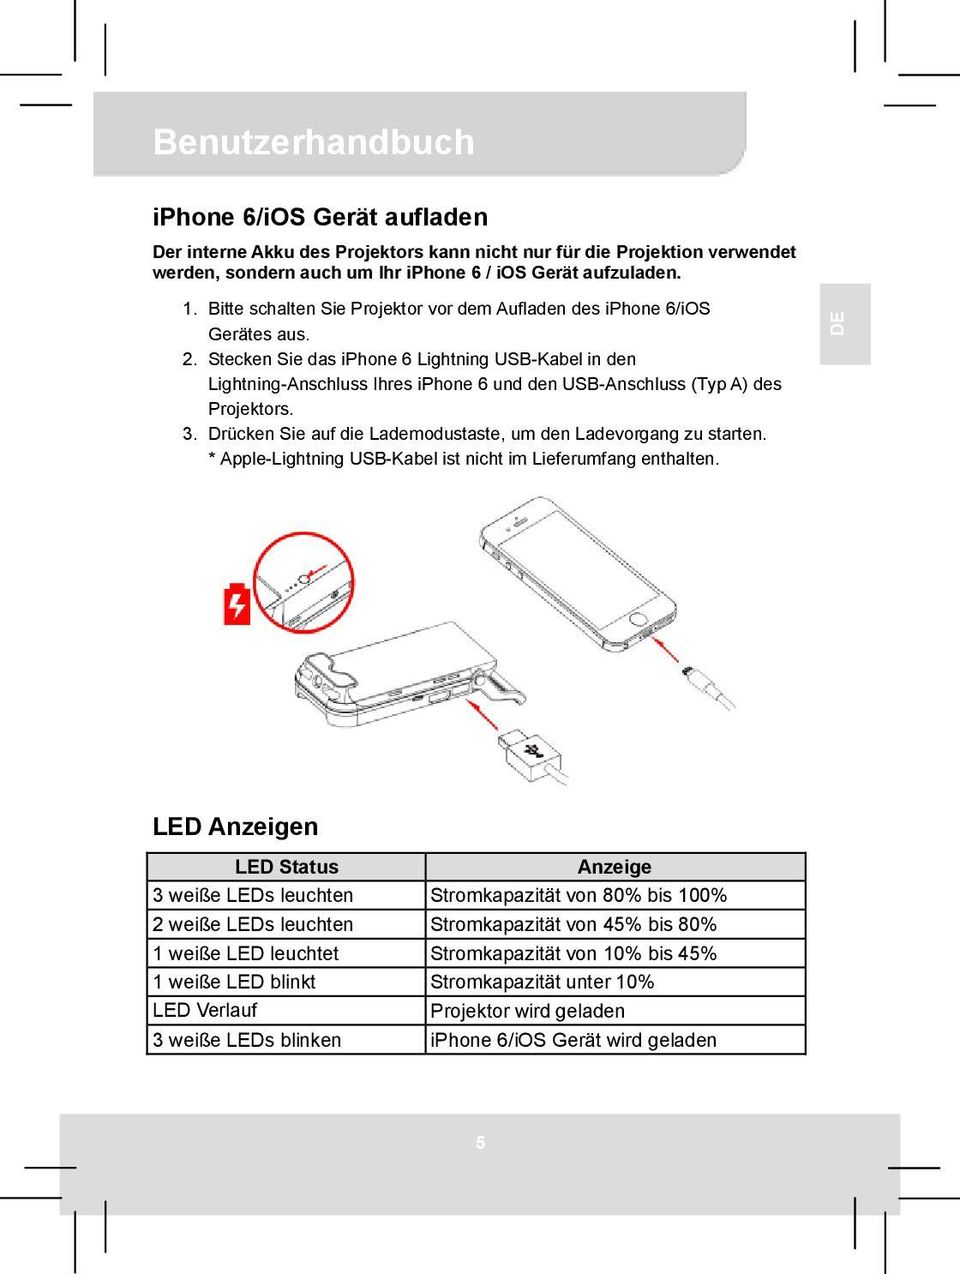 Stecken Sie das iphone 6 Lightning USB-Kabel in den Lightning-Anschluss Ihres iphone 6 und den USB-Anschluss (Typ A) des Projektors. 3.